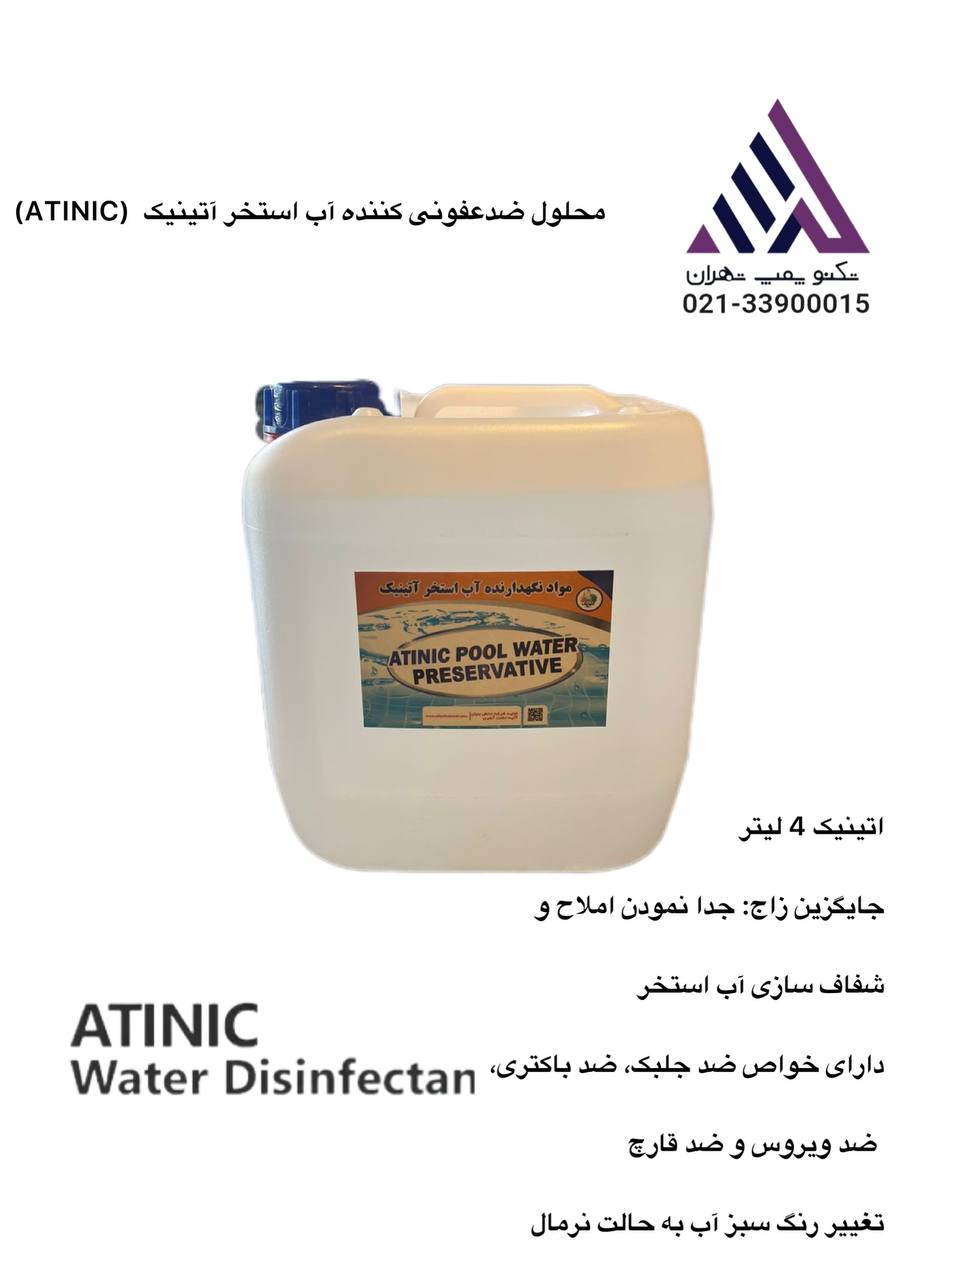 محلول ضدعفونی کننده آب استخر آتینیک  4 لیتر (Atinic)